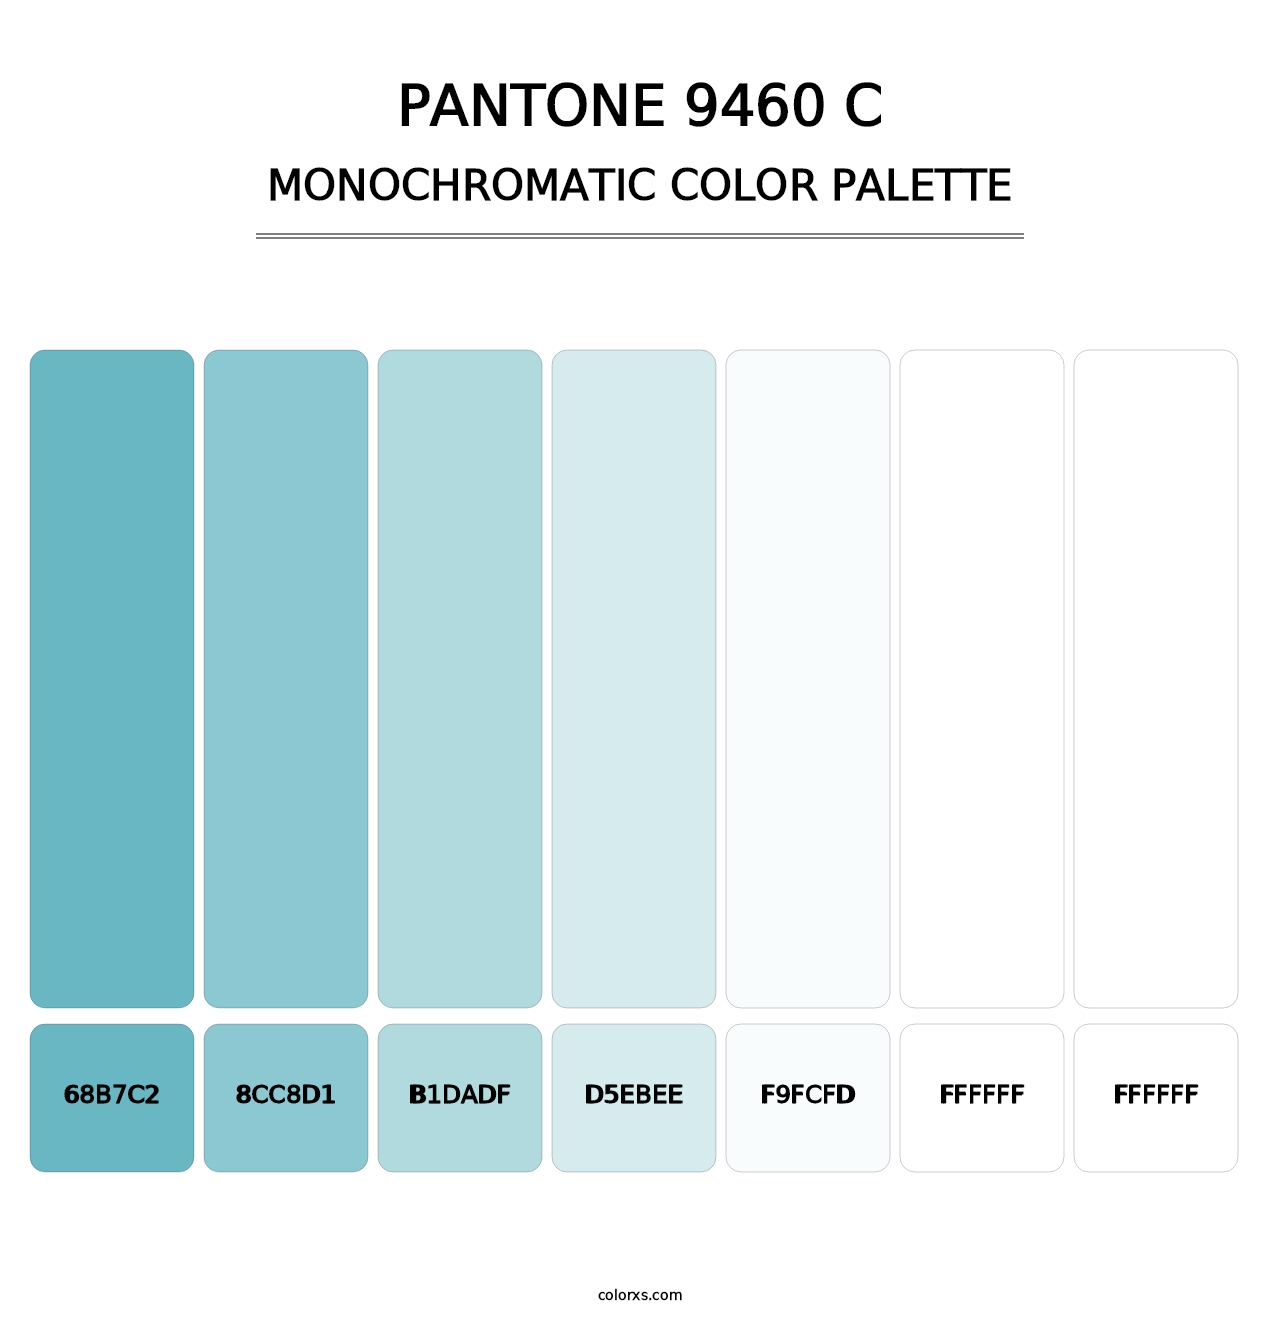 PANTONE 9460 C - Monochromatic Color Palette